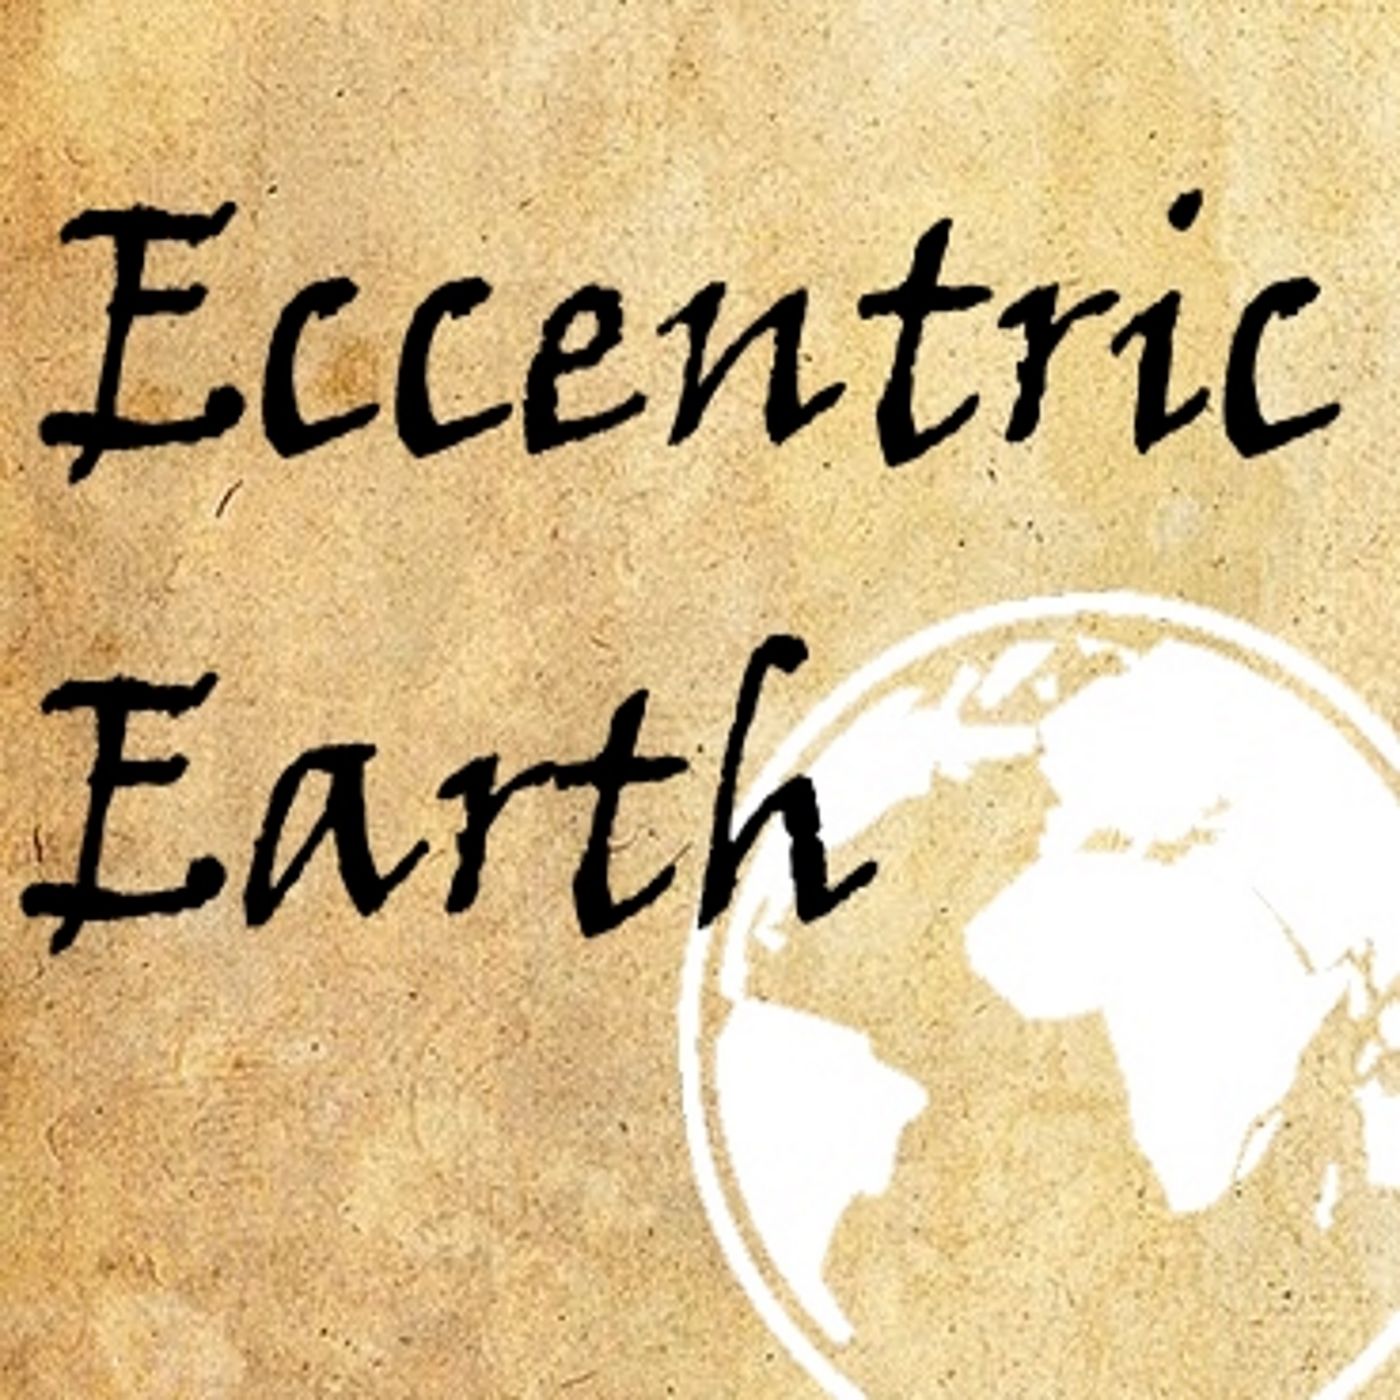 Eccentric Earth